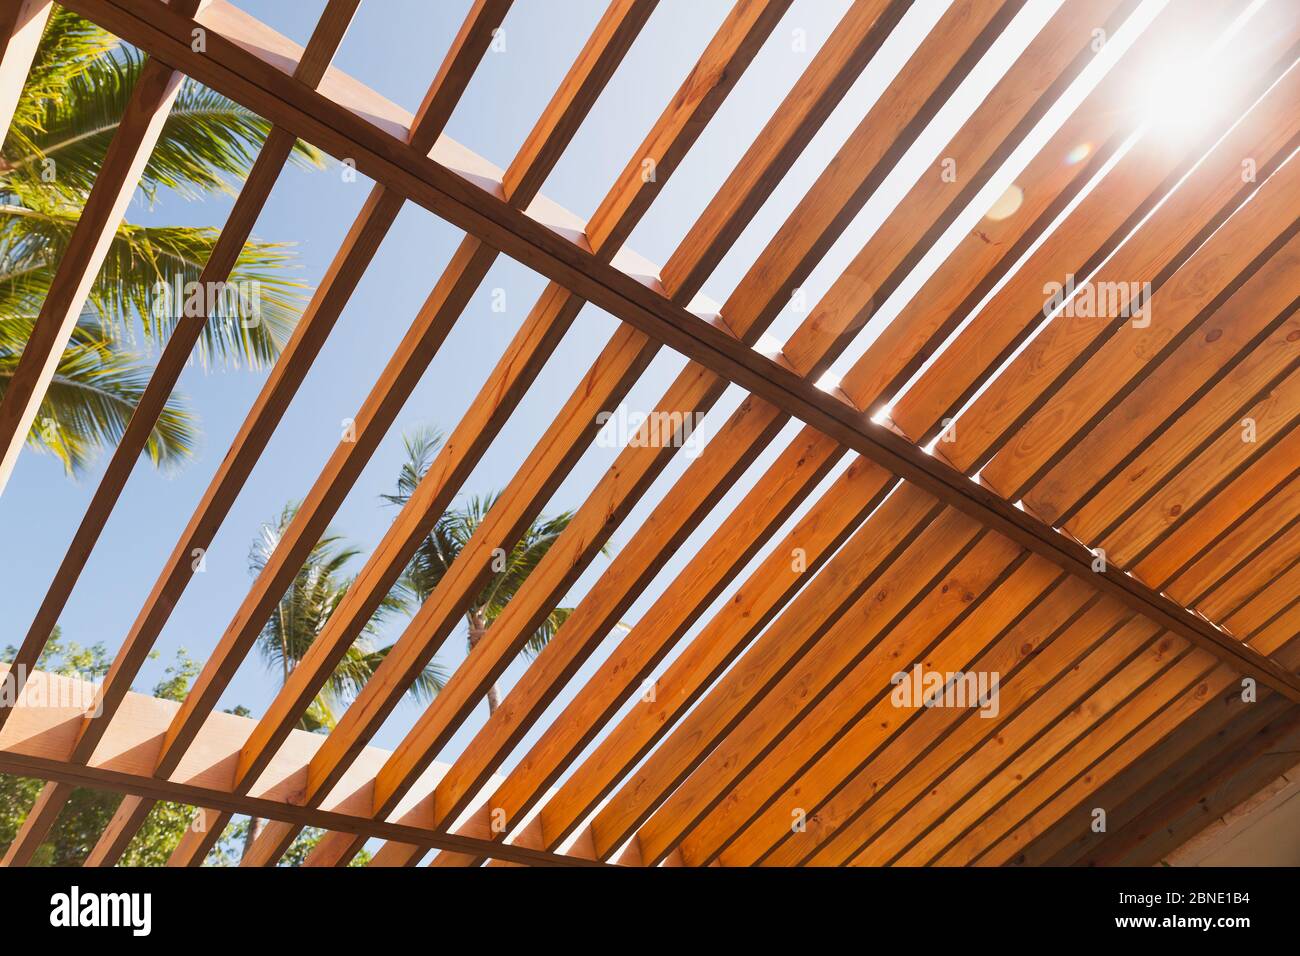 Hölzerne Sonnenschirm Dachstruktur unter blauem Himmel an sonnigen Sommertagen, Palmen sind auf einem Hintergrund Stockfoto